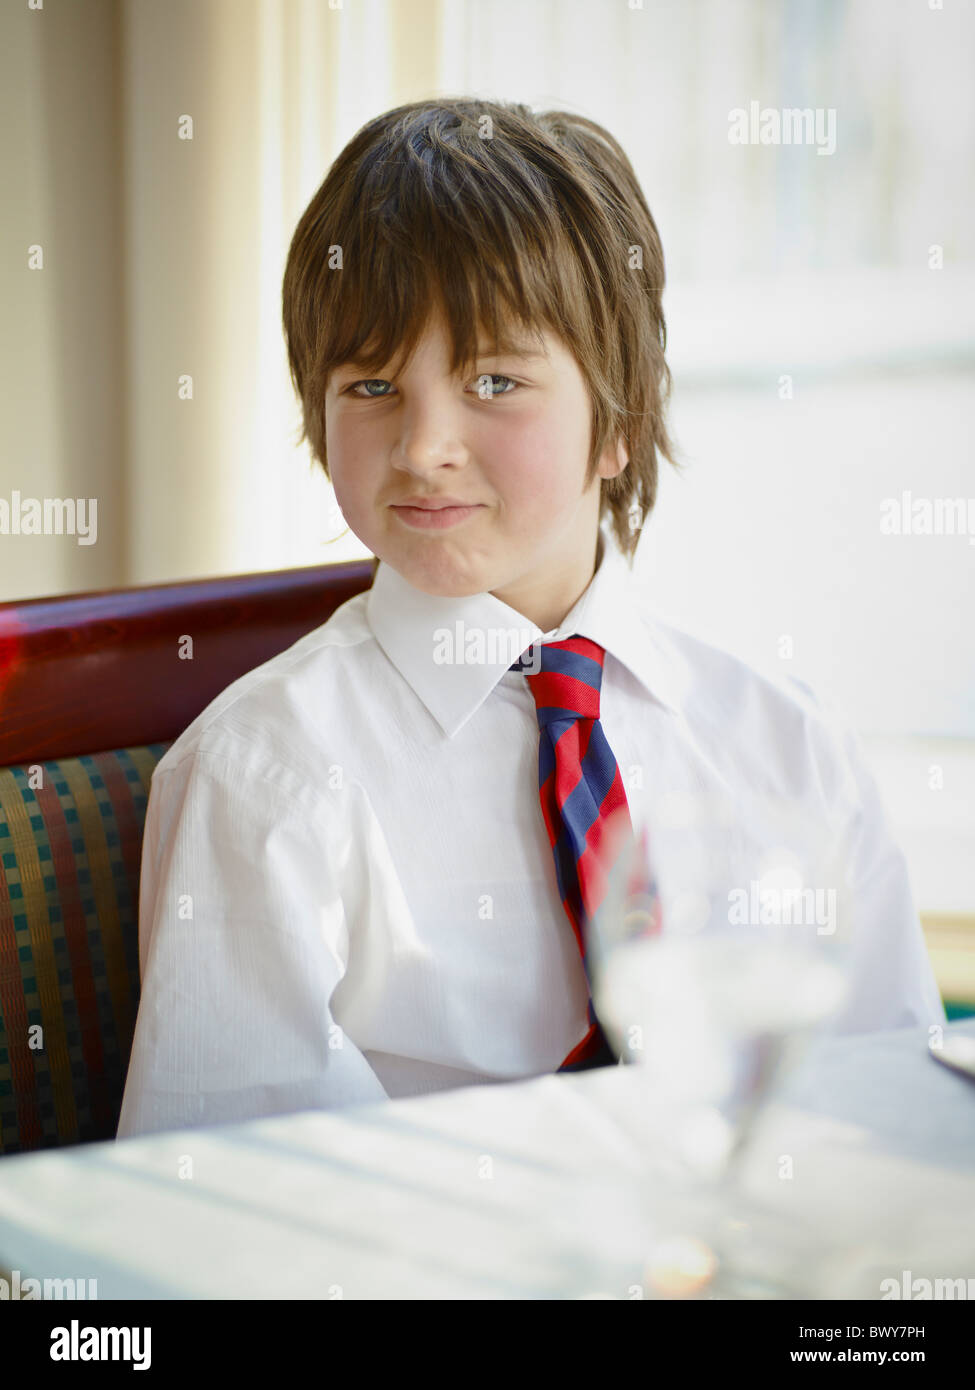 Jungen tragen Hemd und Krawatte im Restaurant Stockfotografie - Alamy